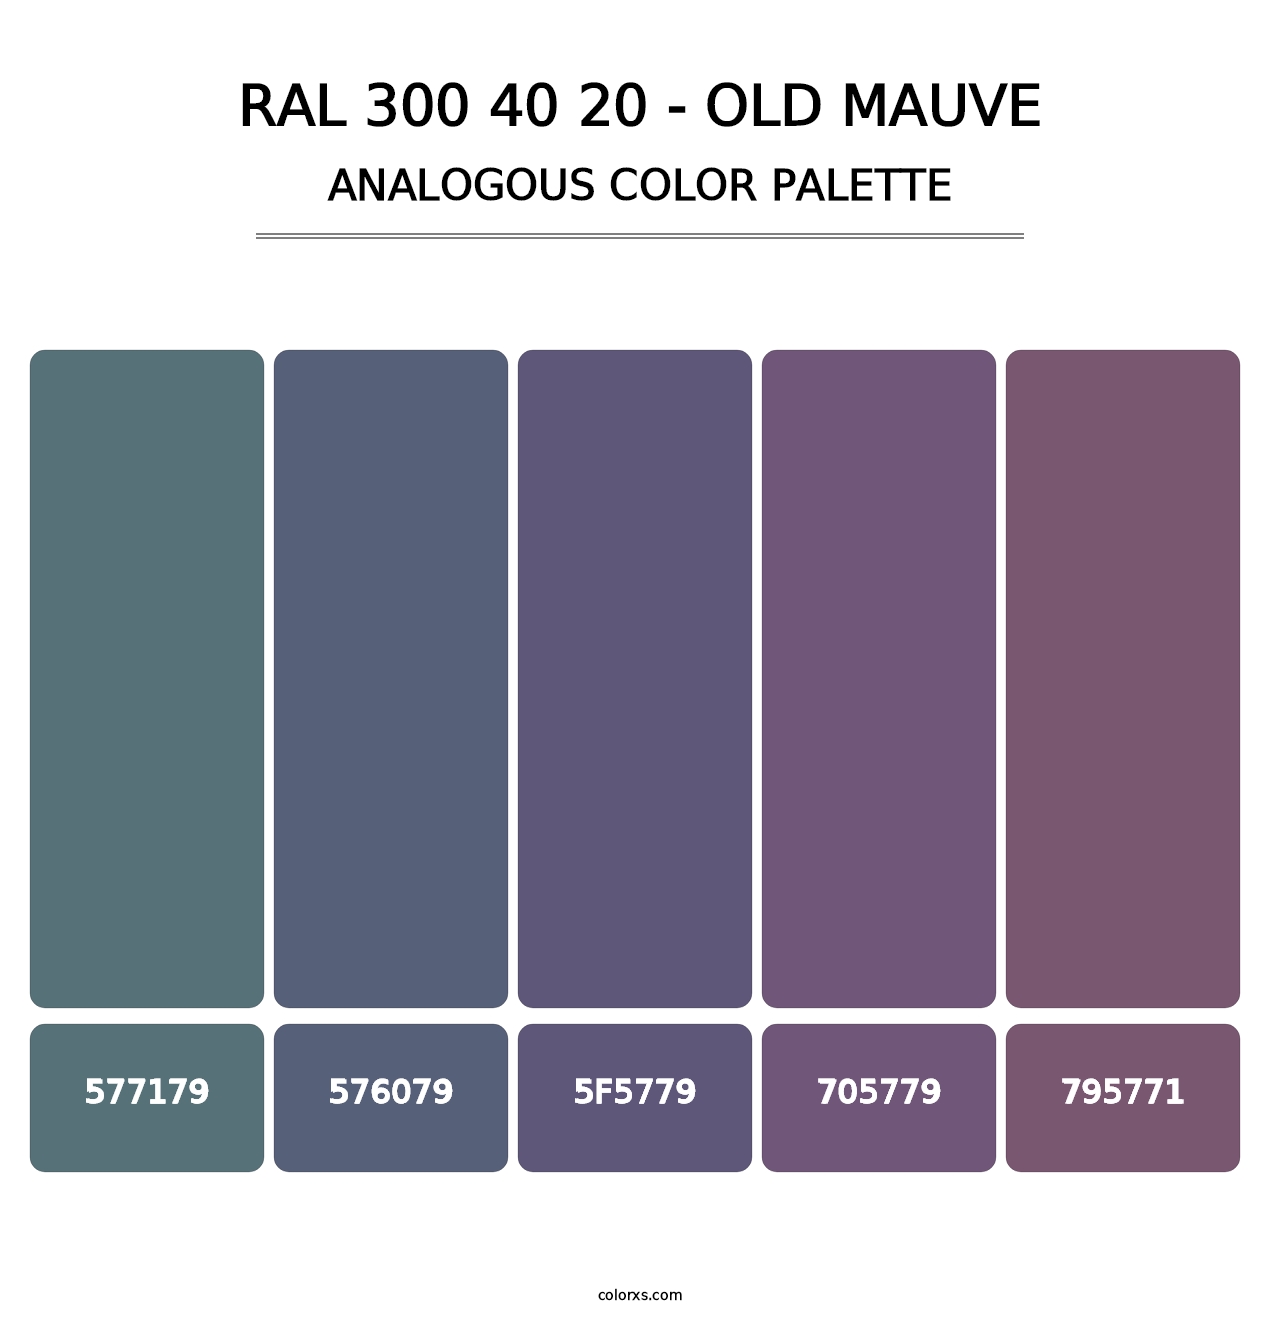 RAL 300 40 20 - Old Mauve - Analogous Color Palette